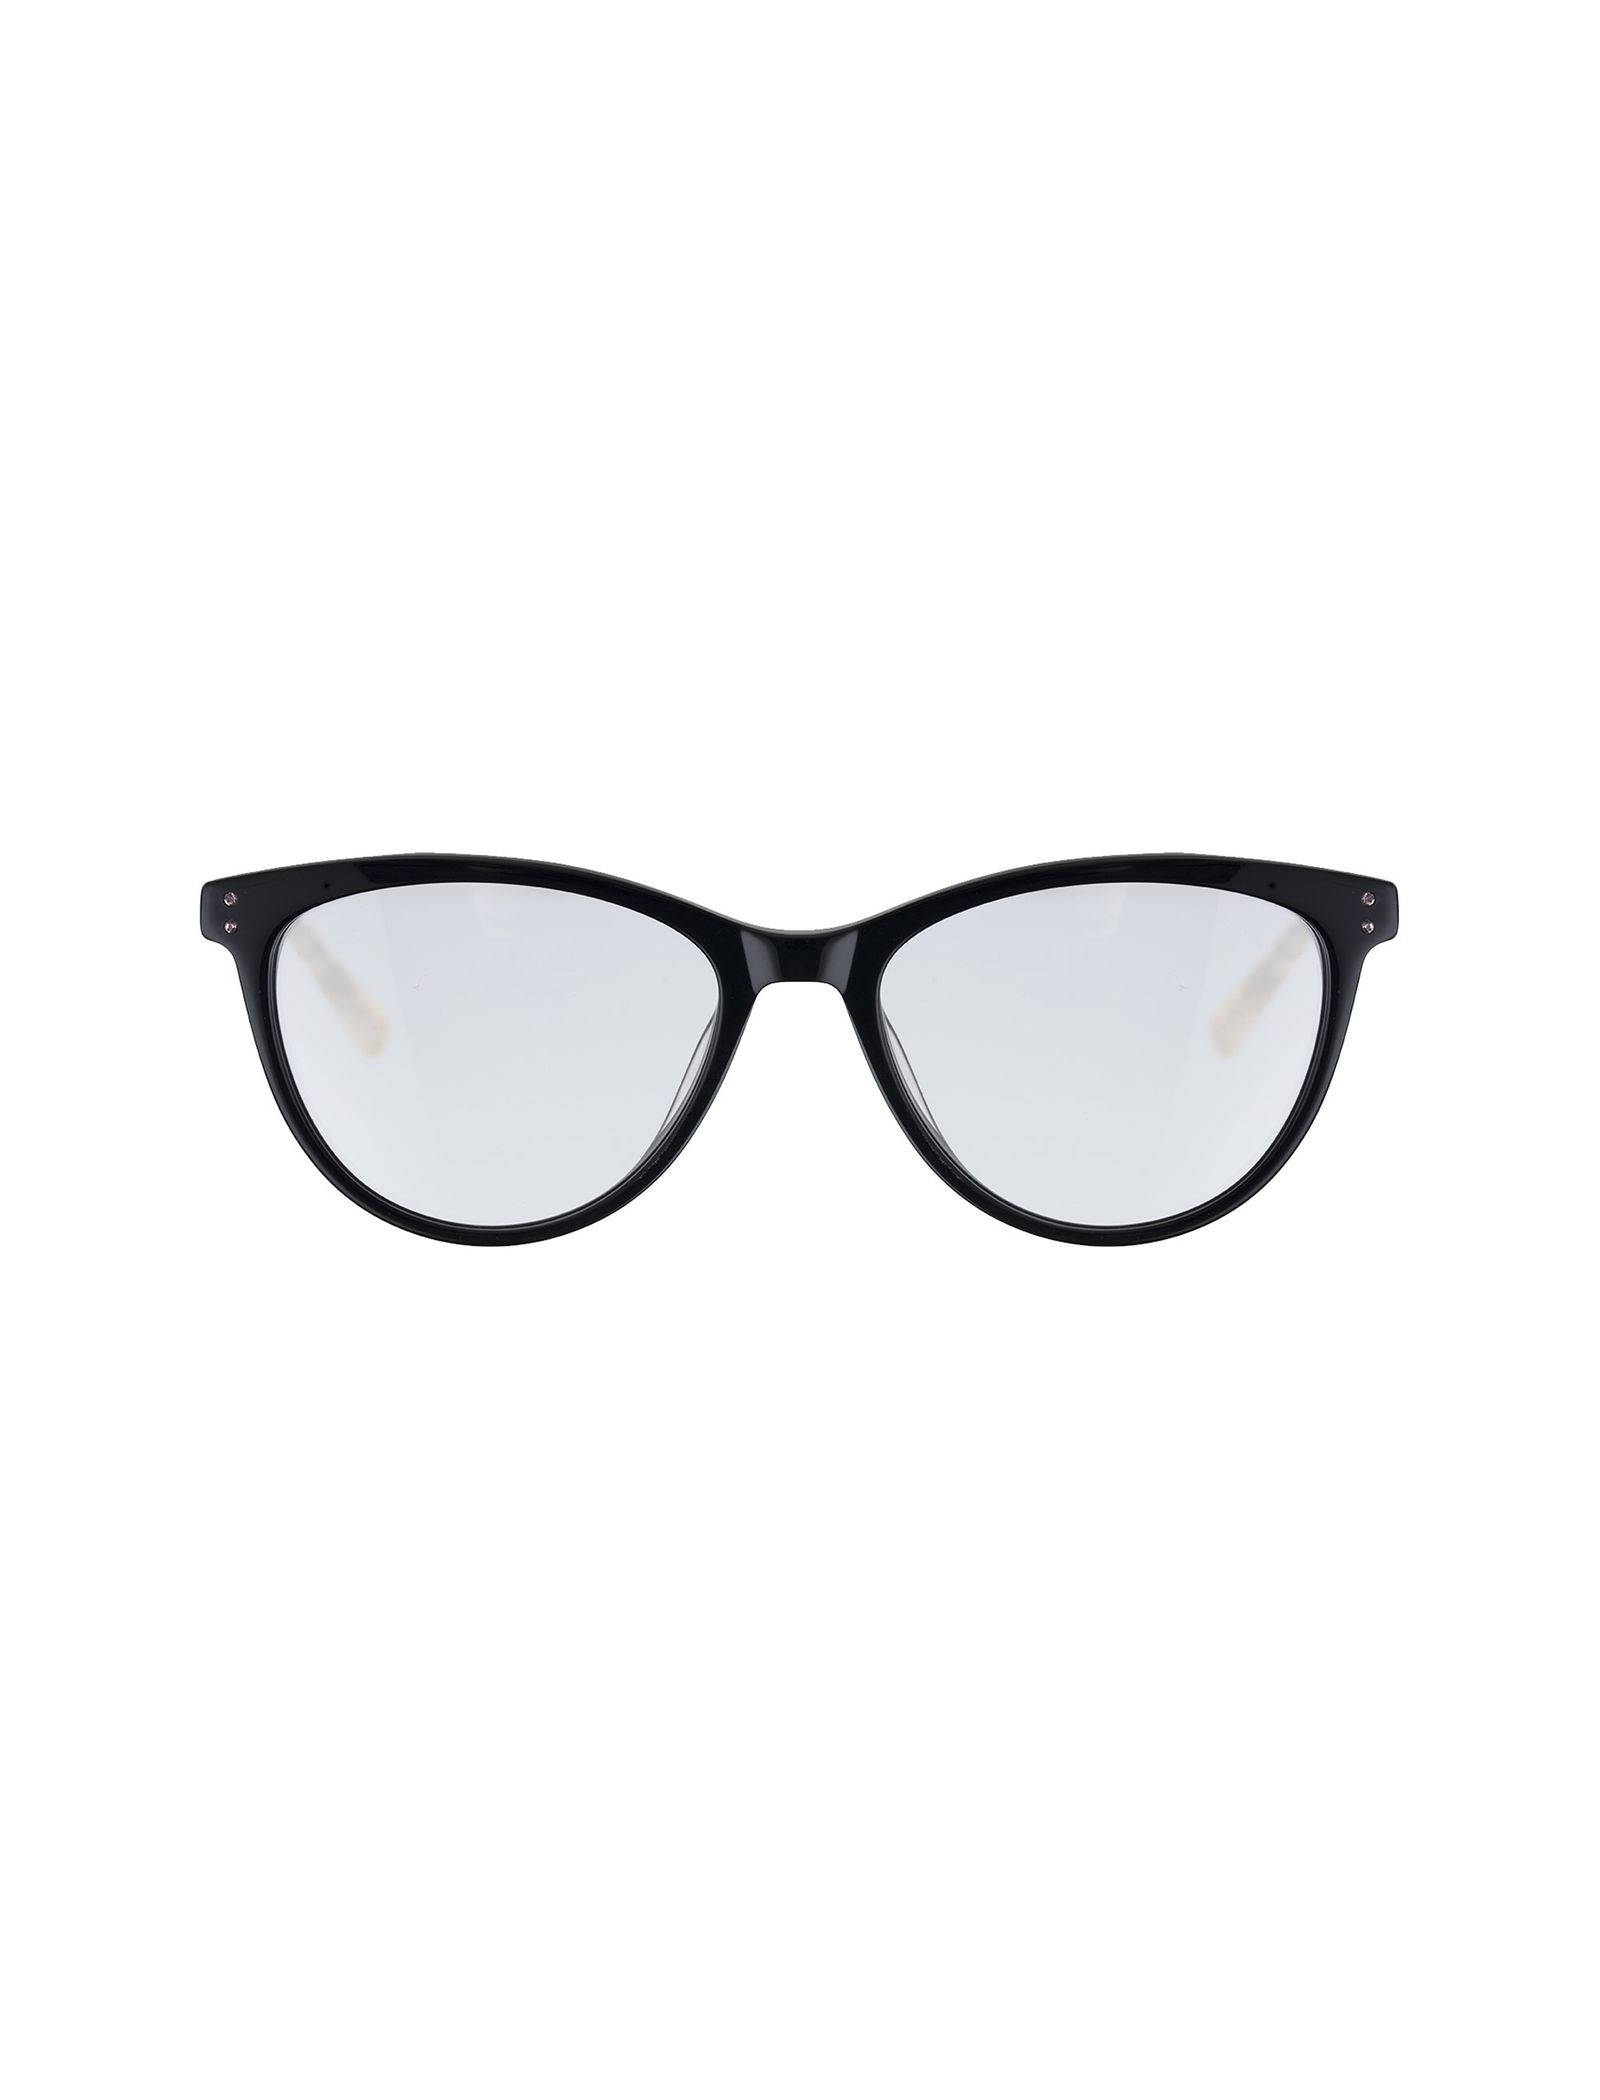 عینک طبی پنتوس زنانه - تد بیکر - مشکي - 2